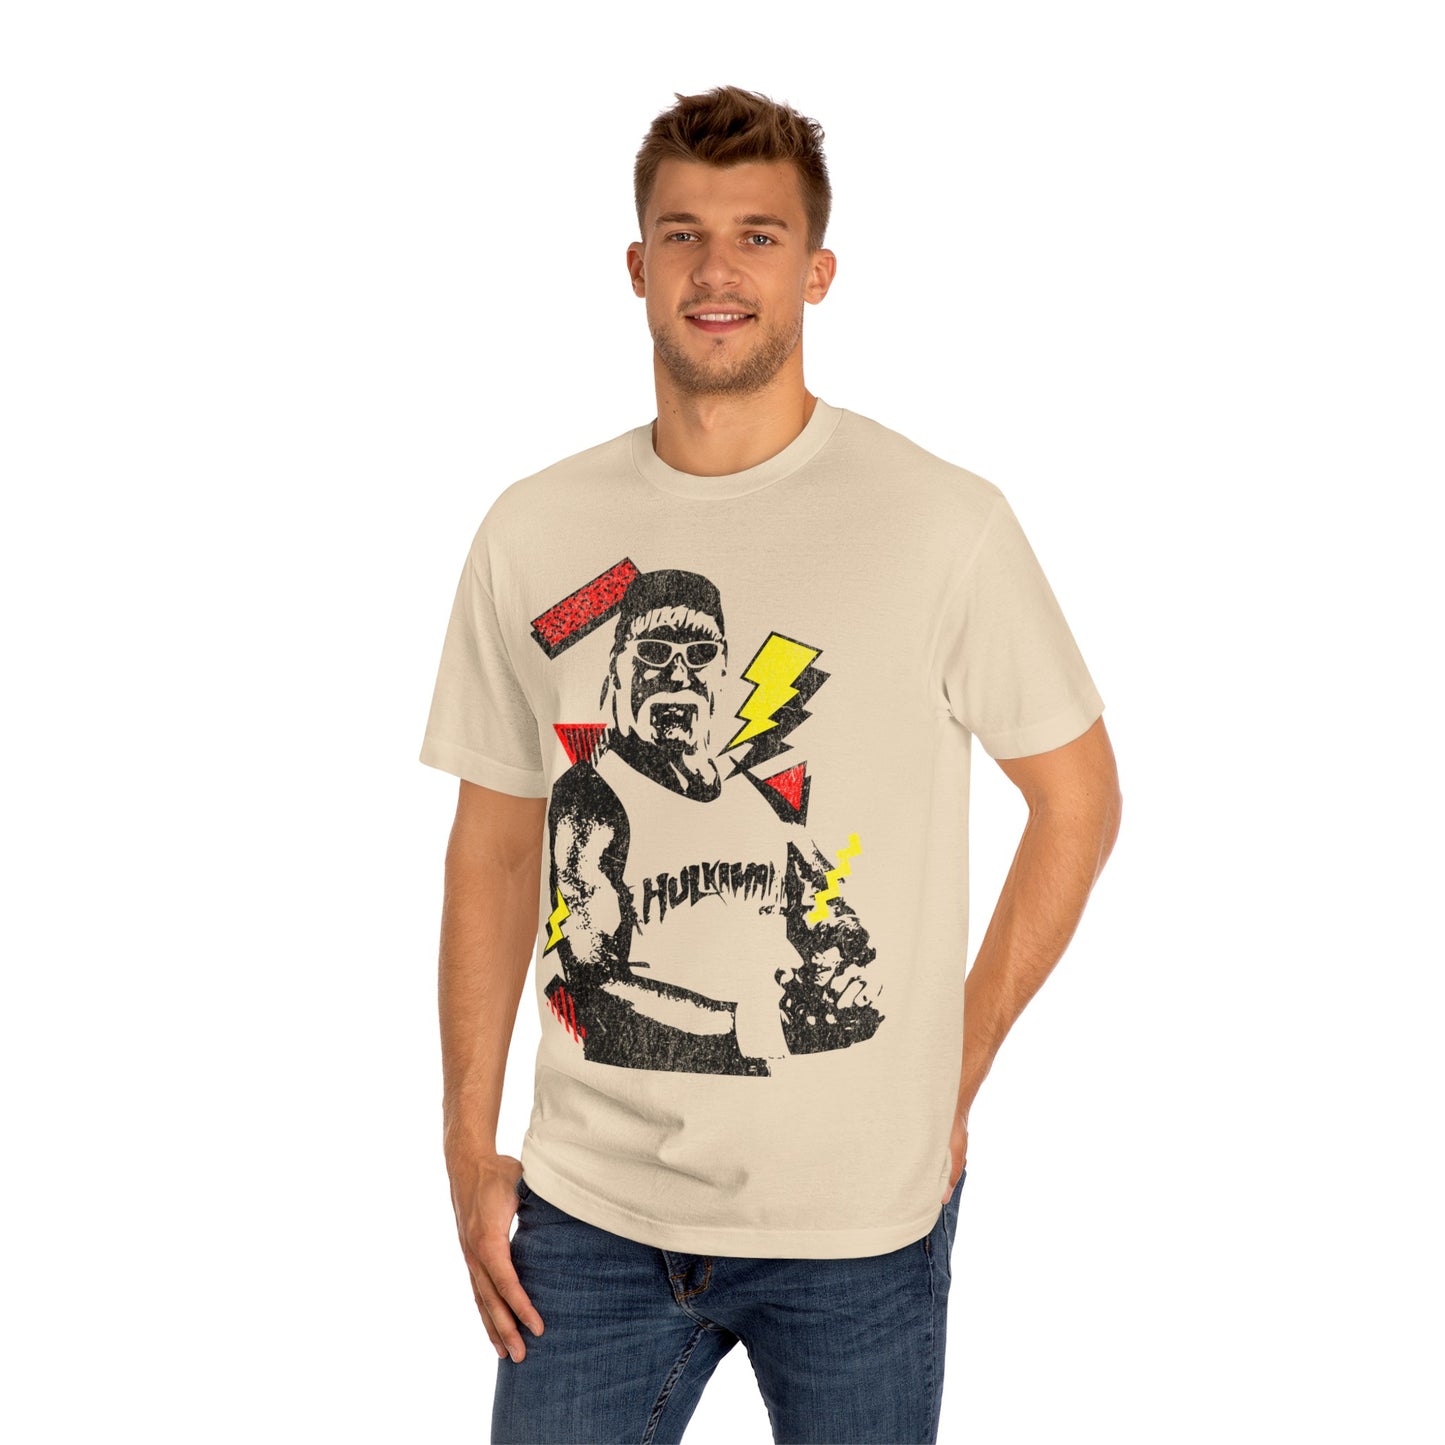 Hulk Hogan T-Shirt Sand